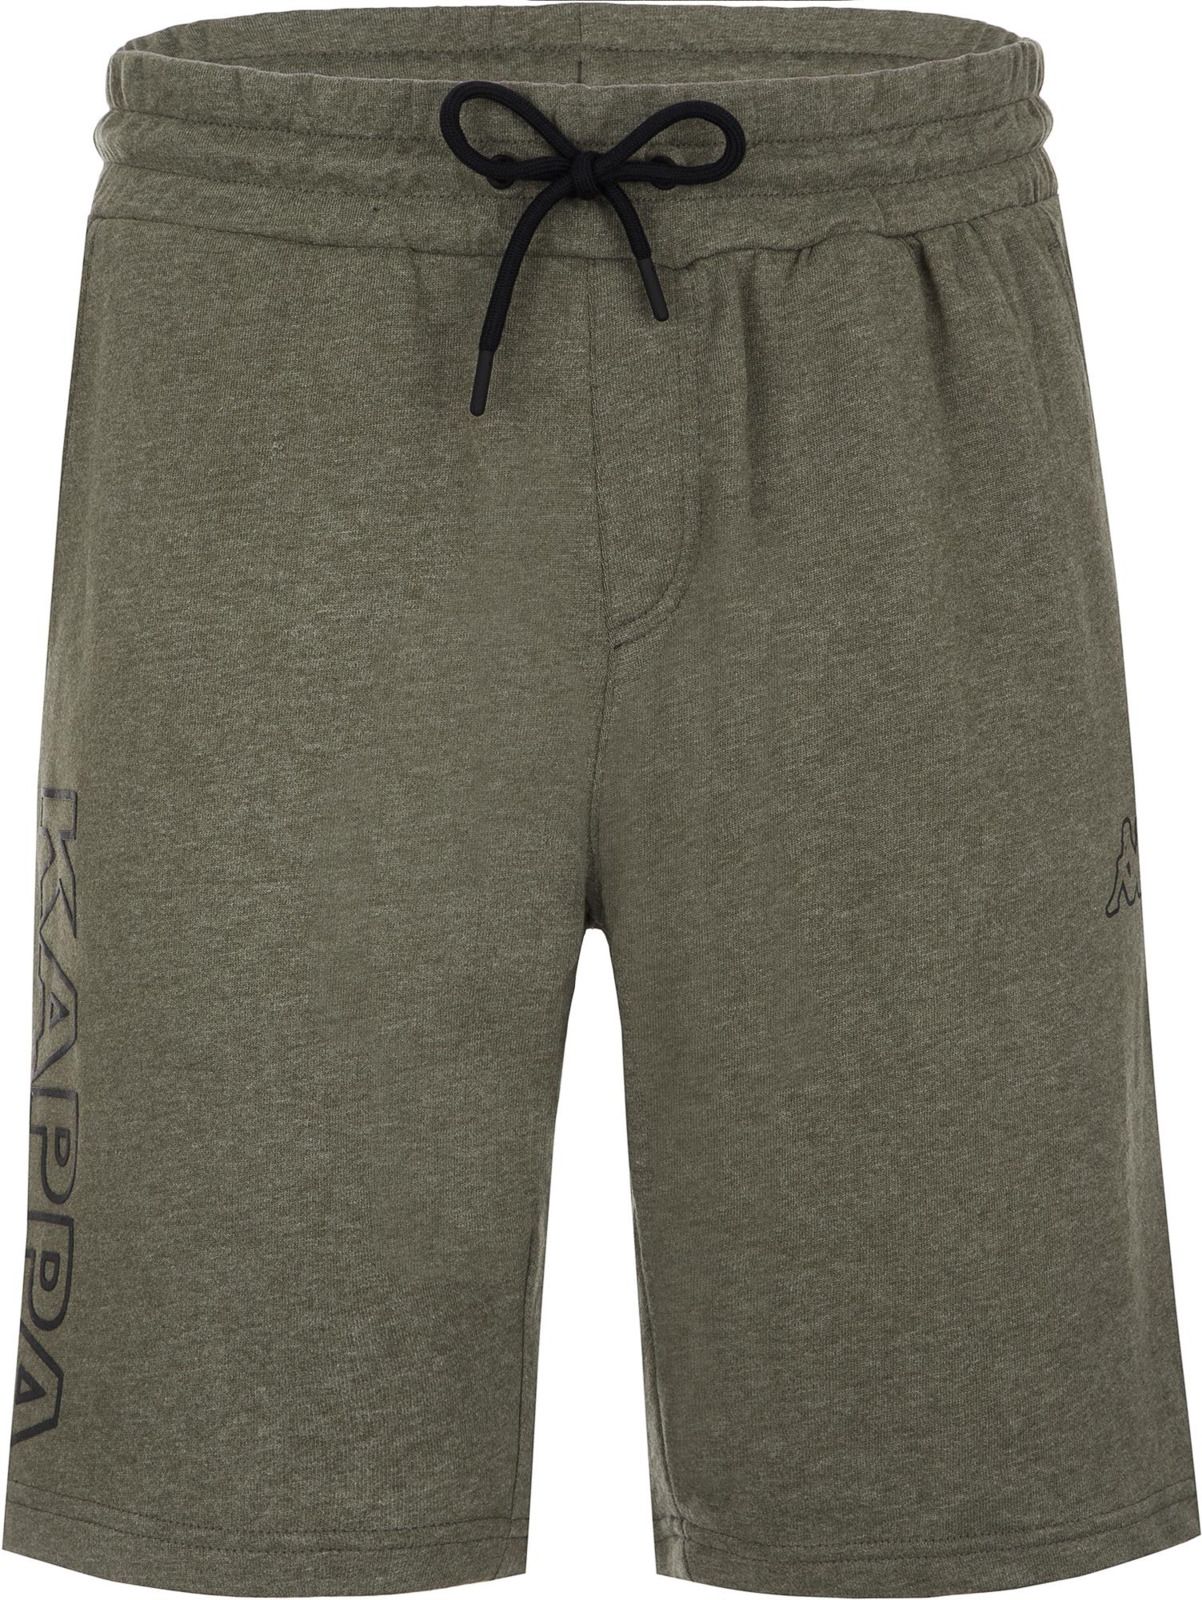   Kappa Men's Shorts, : -. 304IDQ0-5U.  L (50)